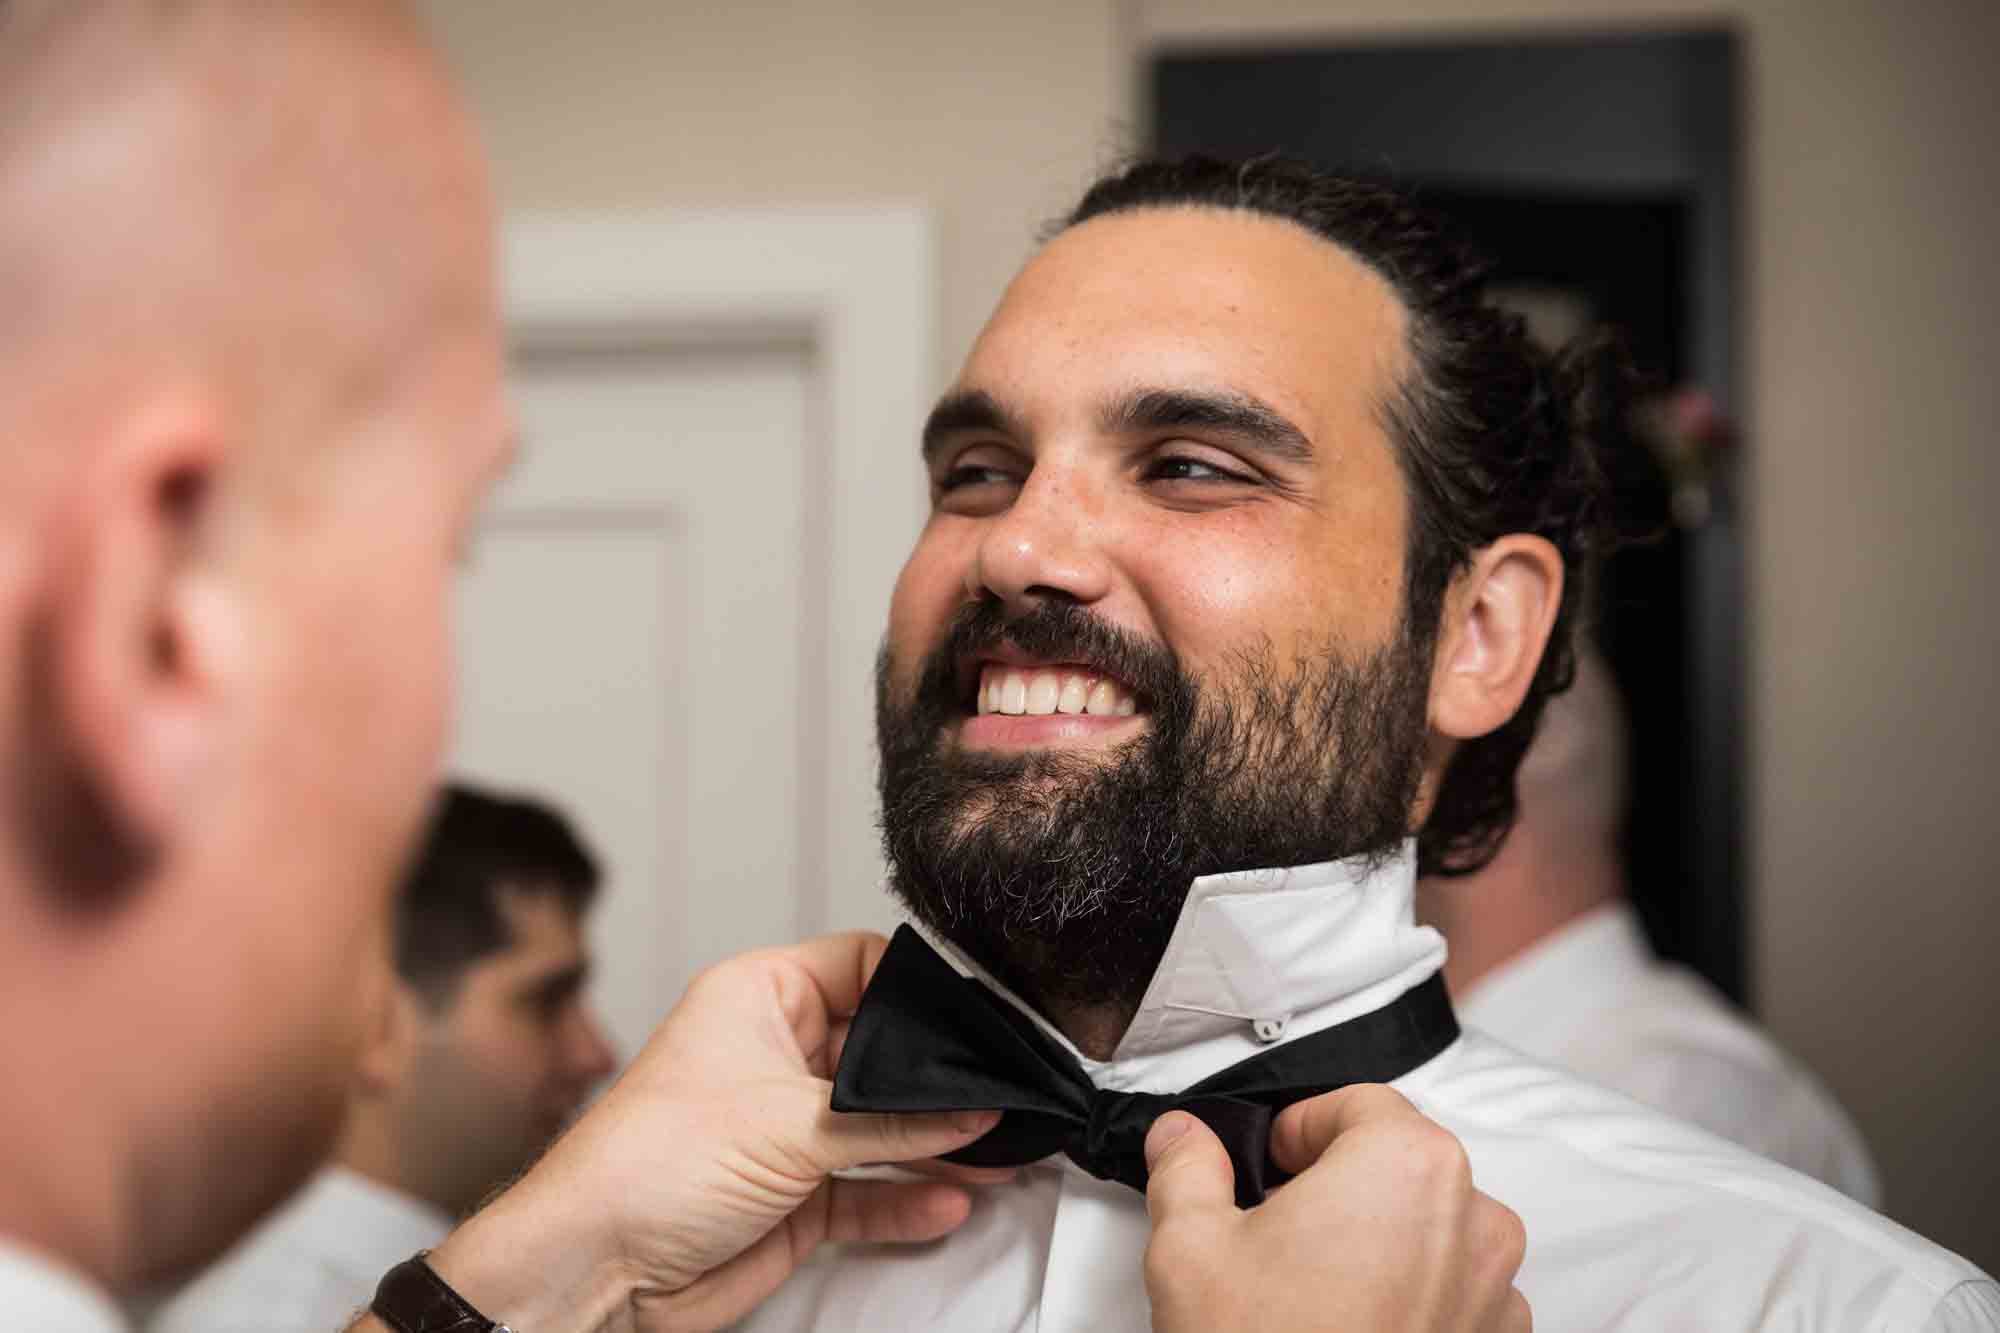 Groomsman helping smiling groom tie bow tie in hotel room